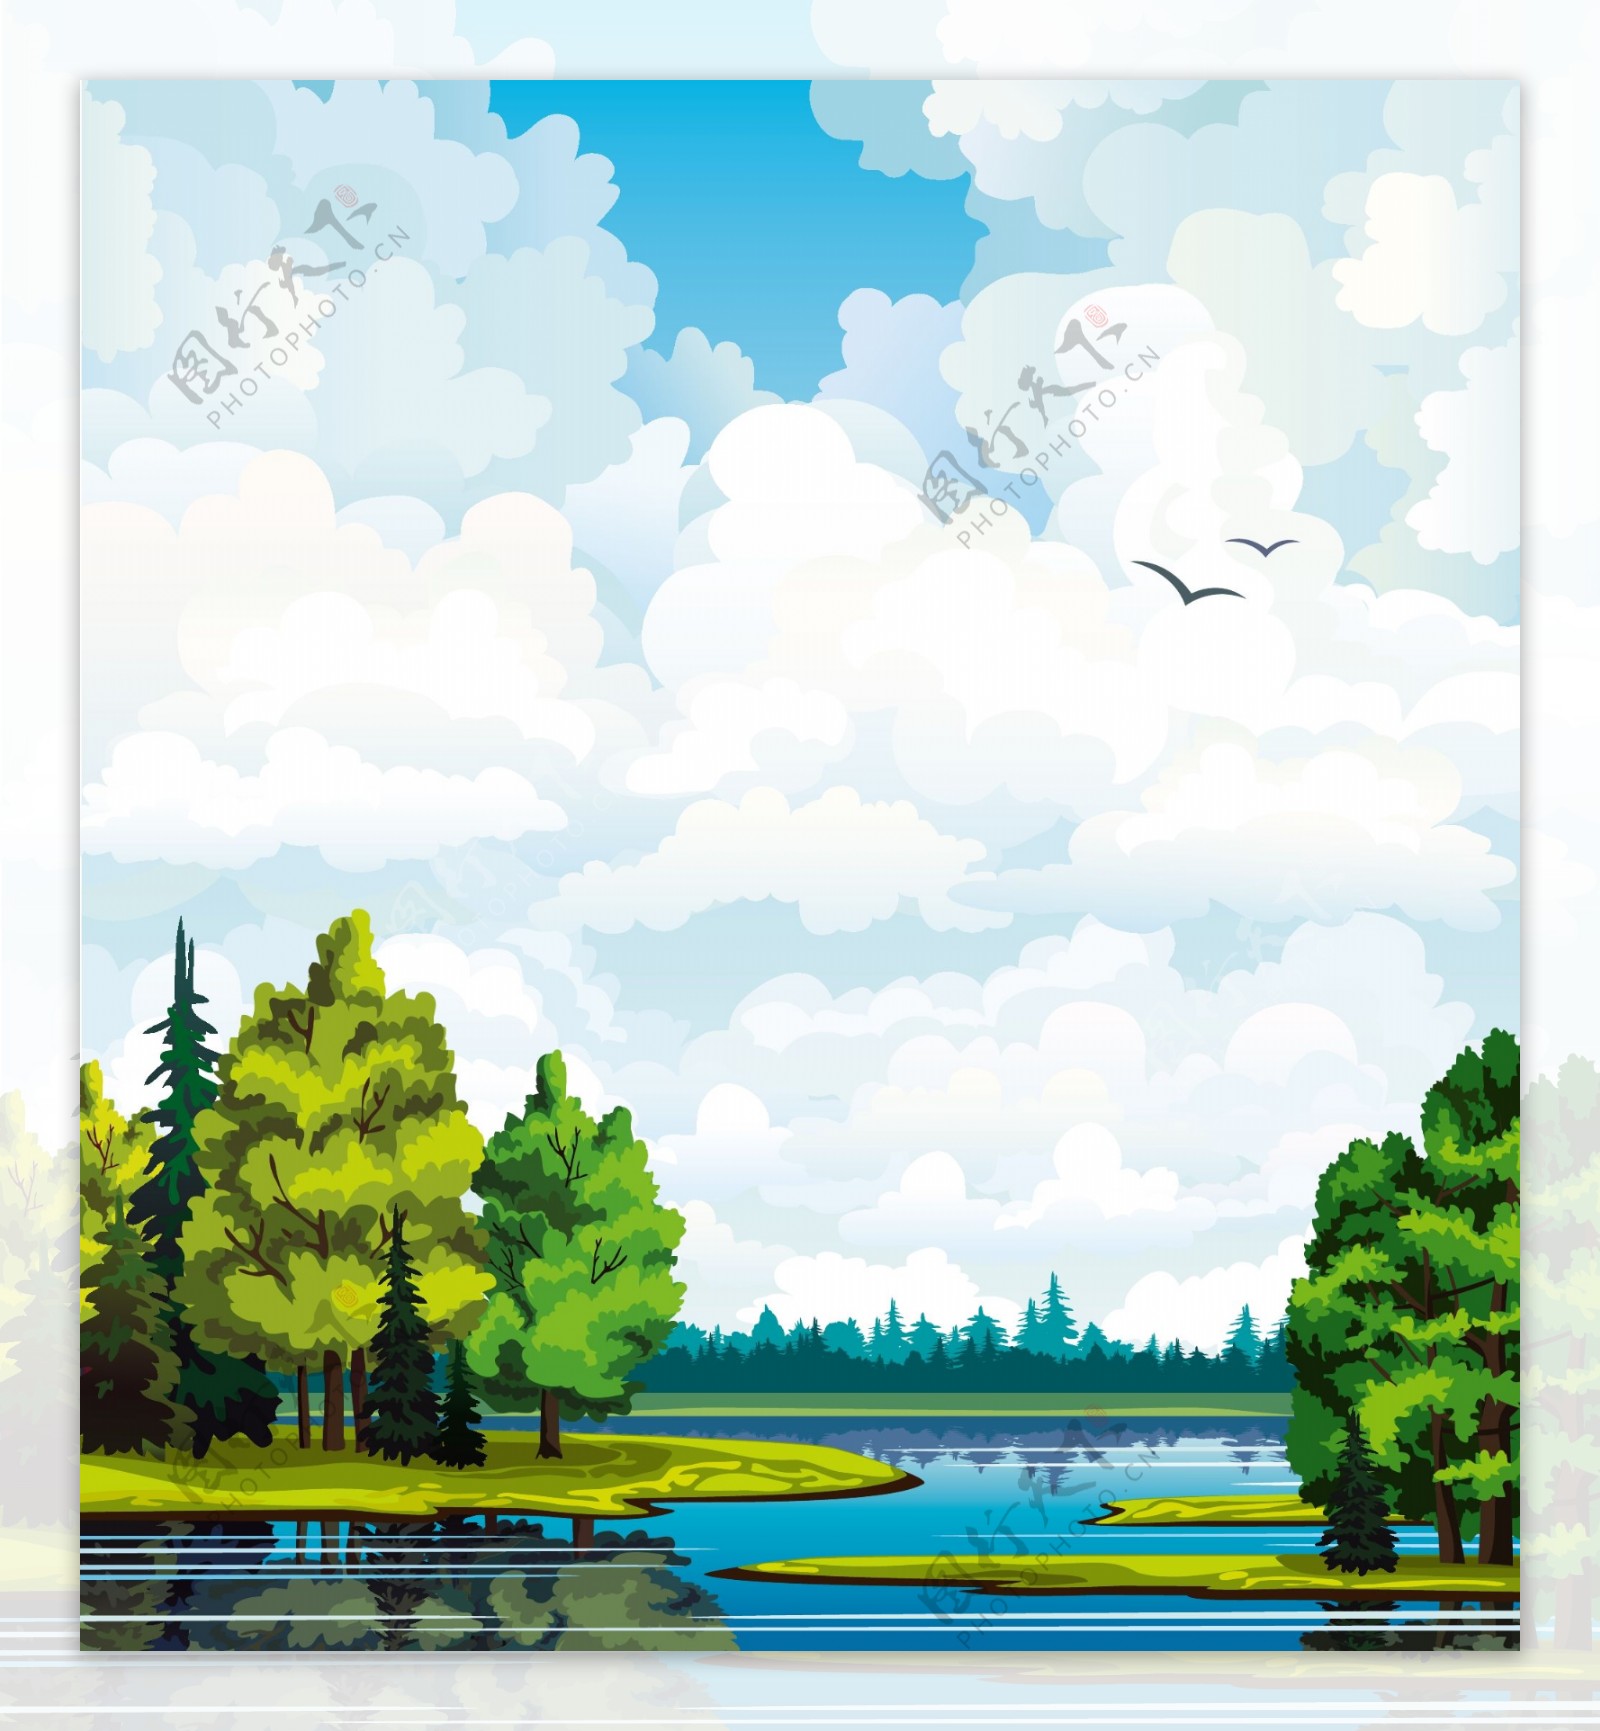 树木湖水蓝天风景